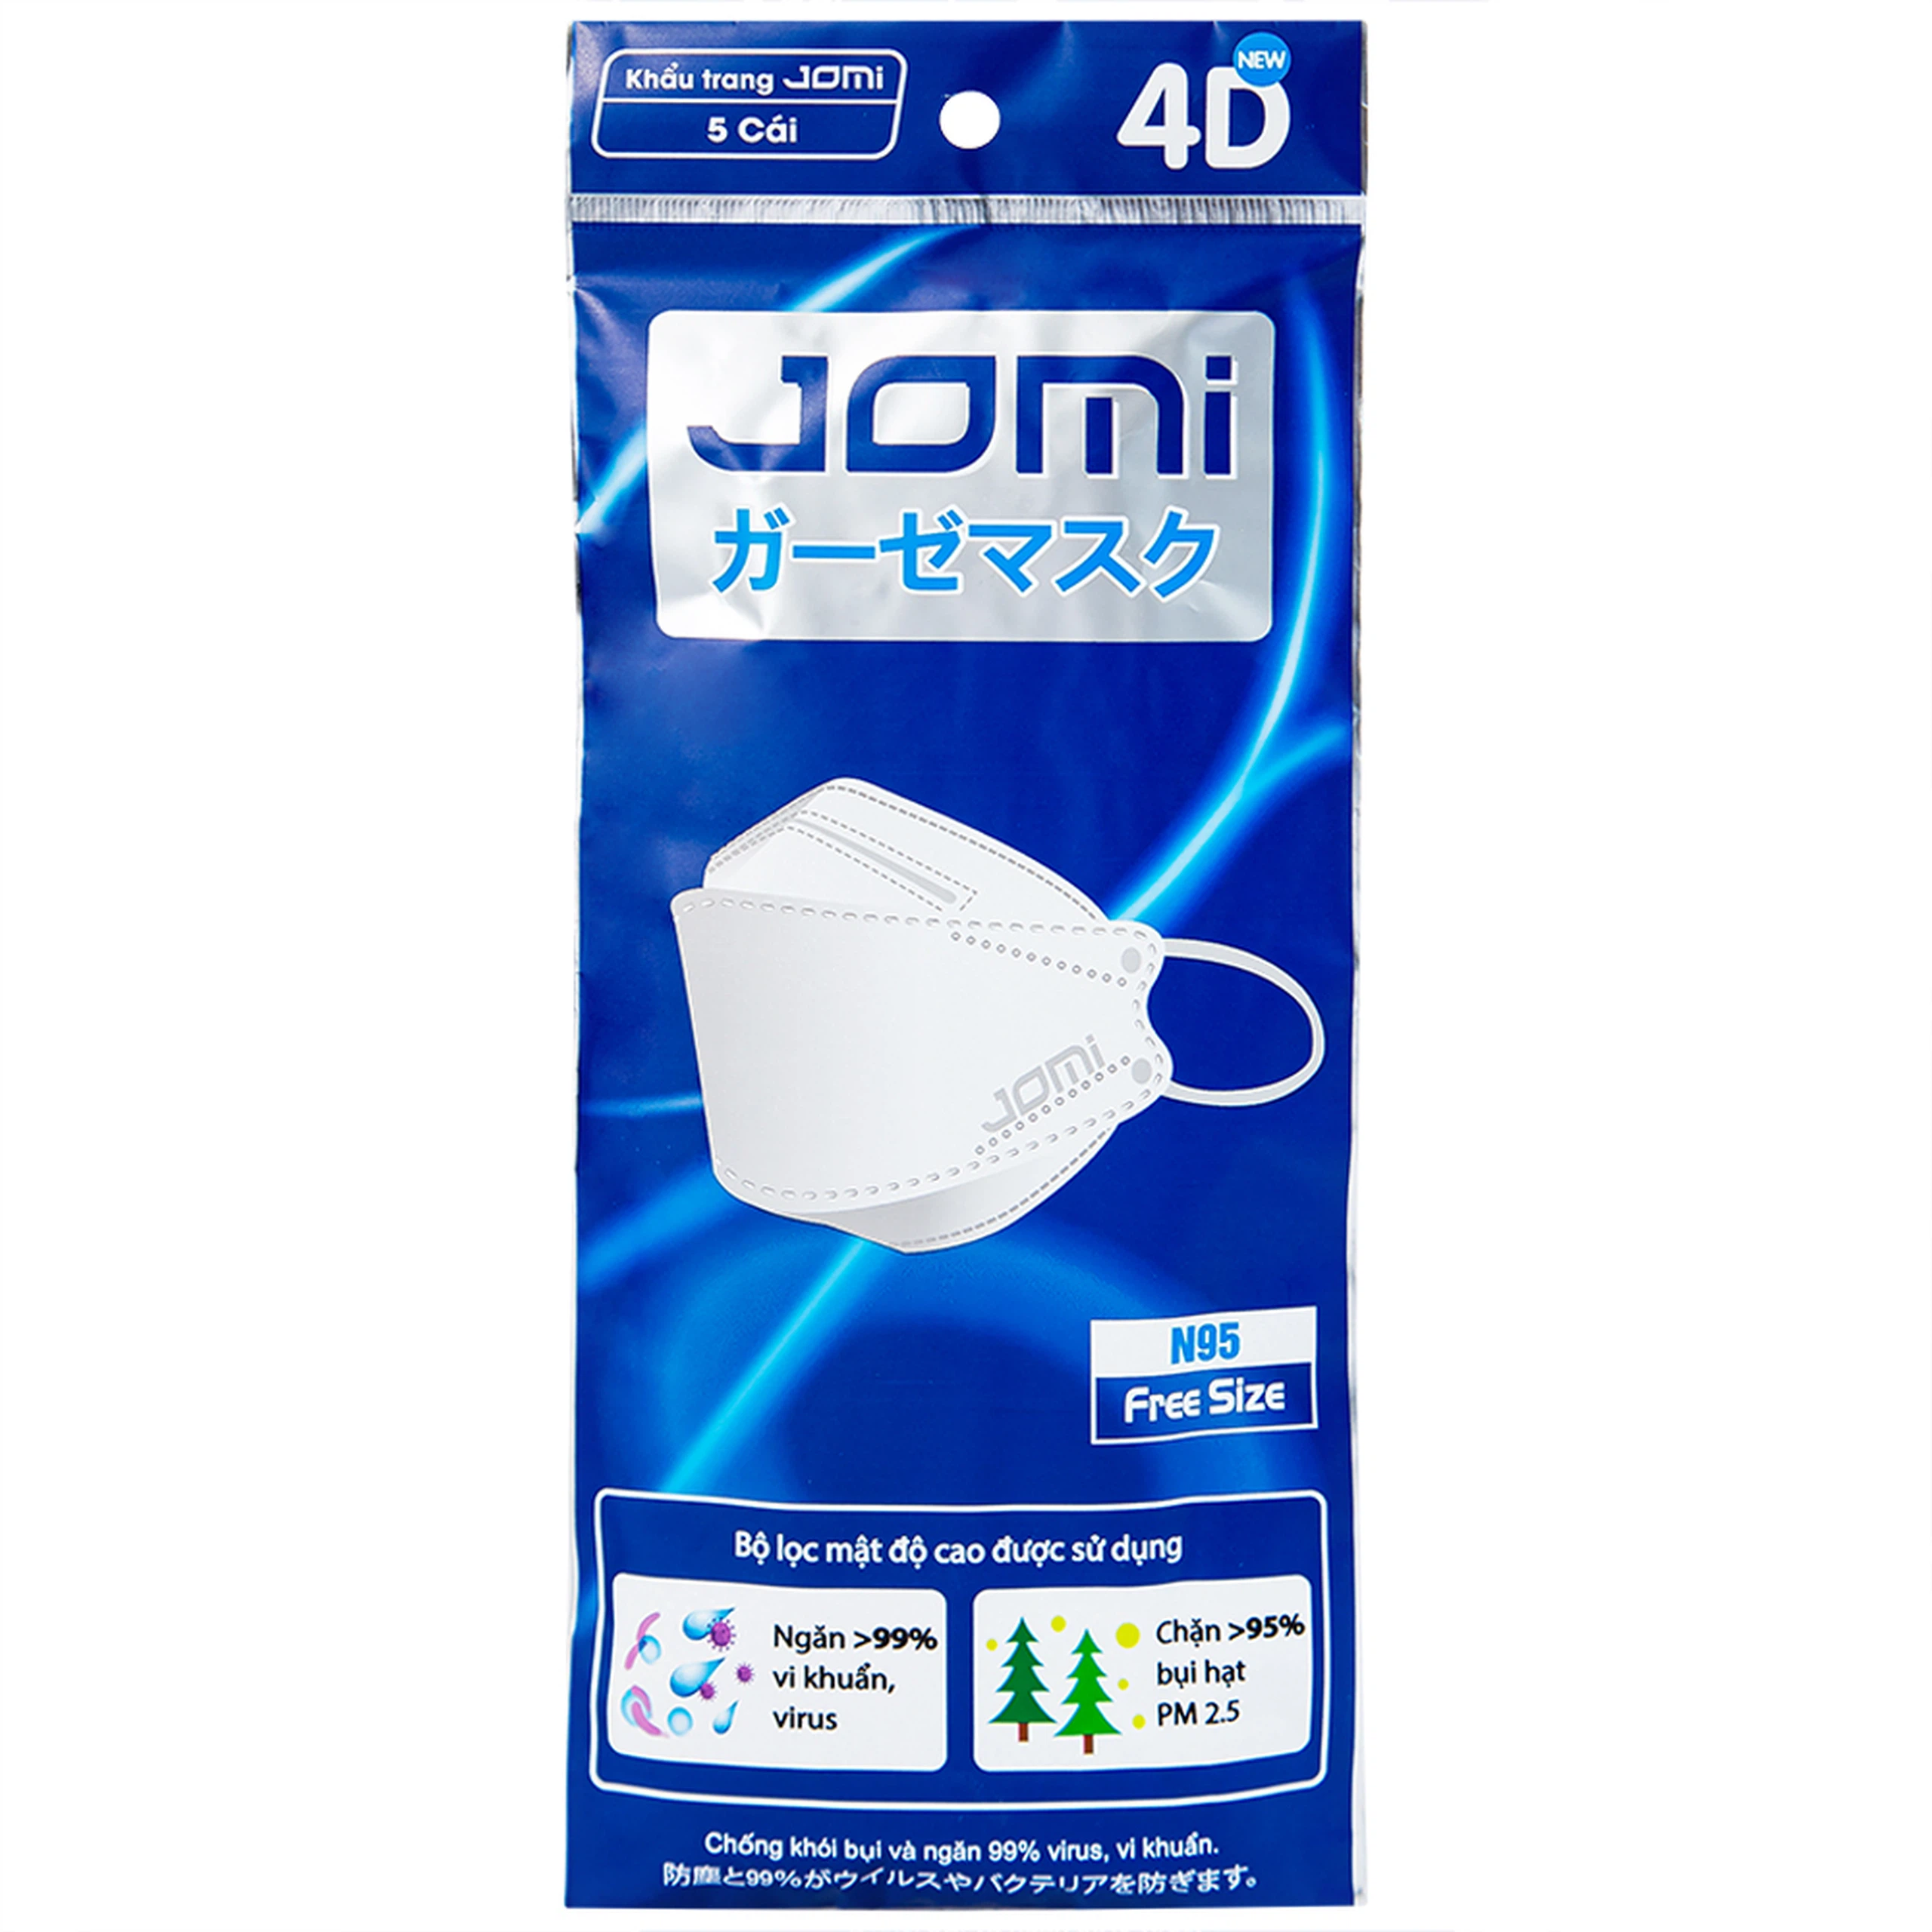 Khẩu trang Jomi 4D N95 lọc hơn 95% bụi PM2.5, chặn 99% vi khuẩn (5 cái)